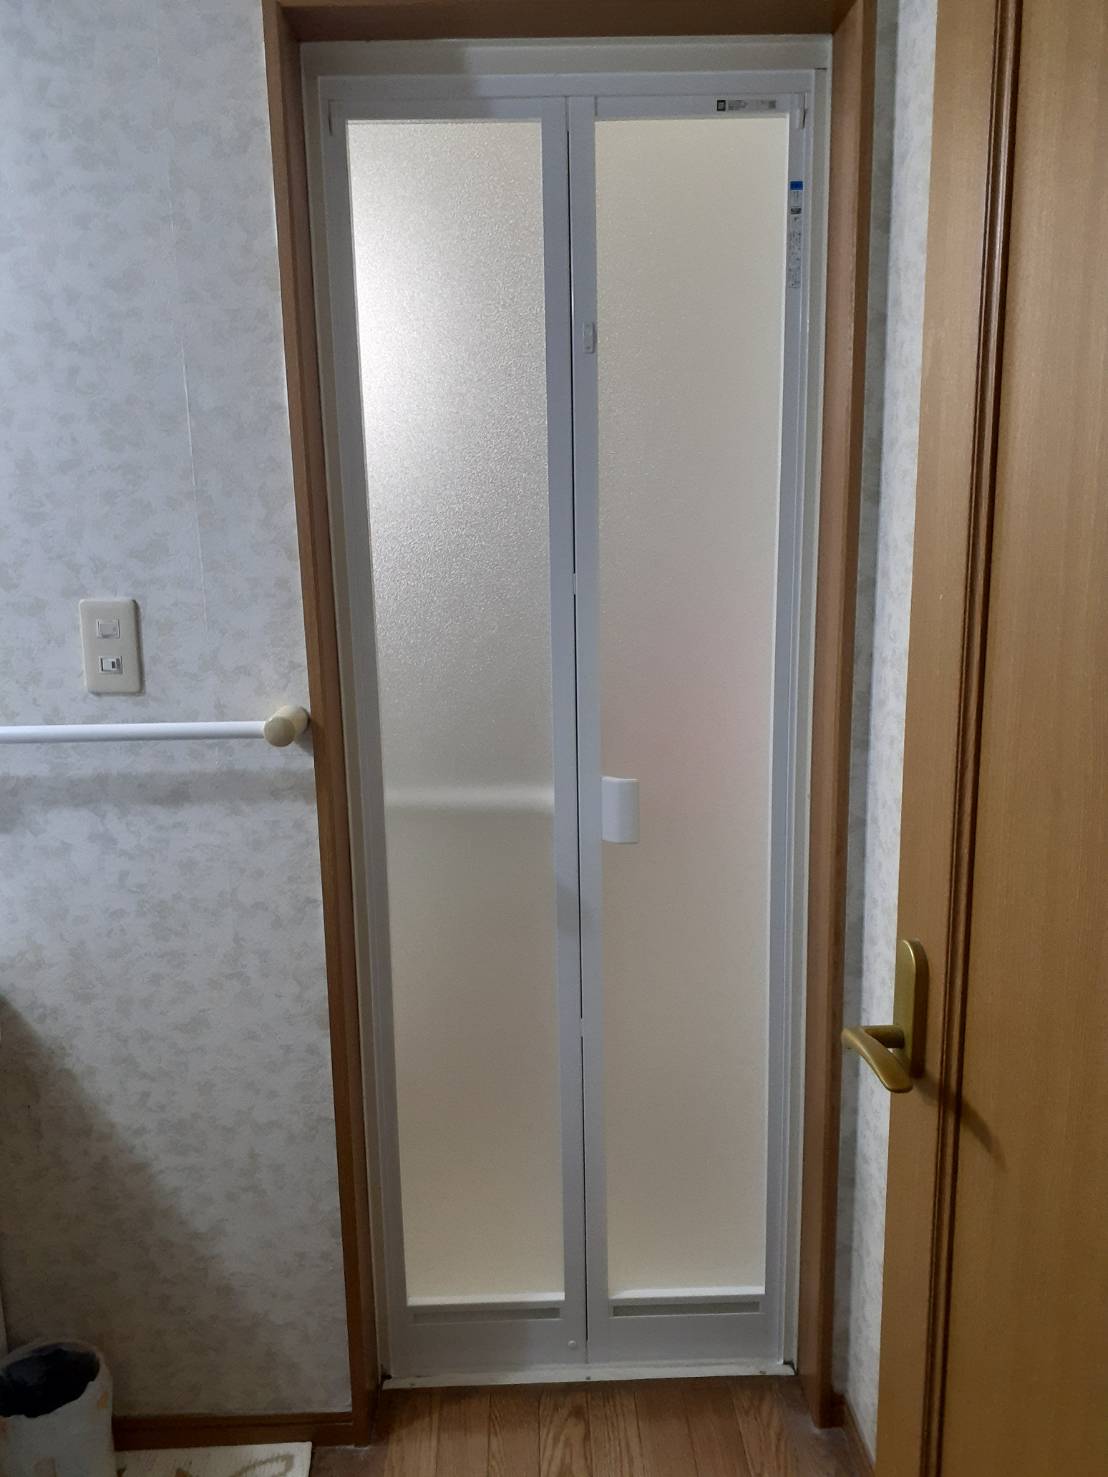 横須賀市深田台で浴室折戸をカバー工法で交換工事をした場合のドア枠サイズの変化